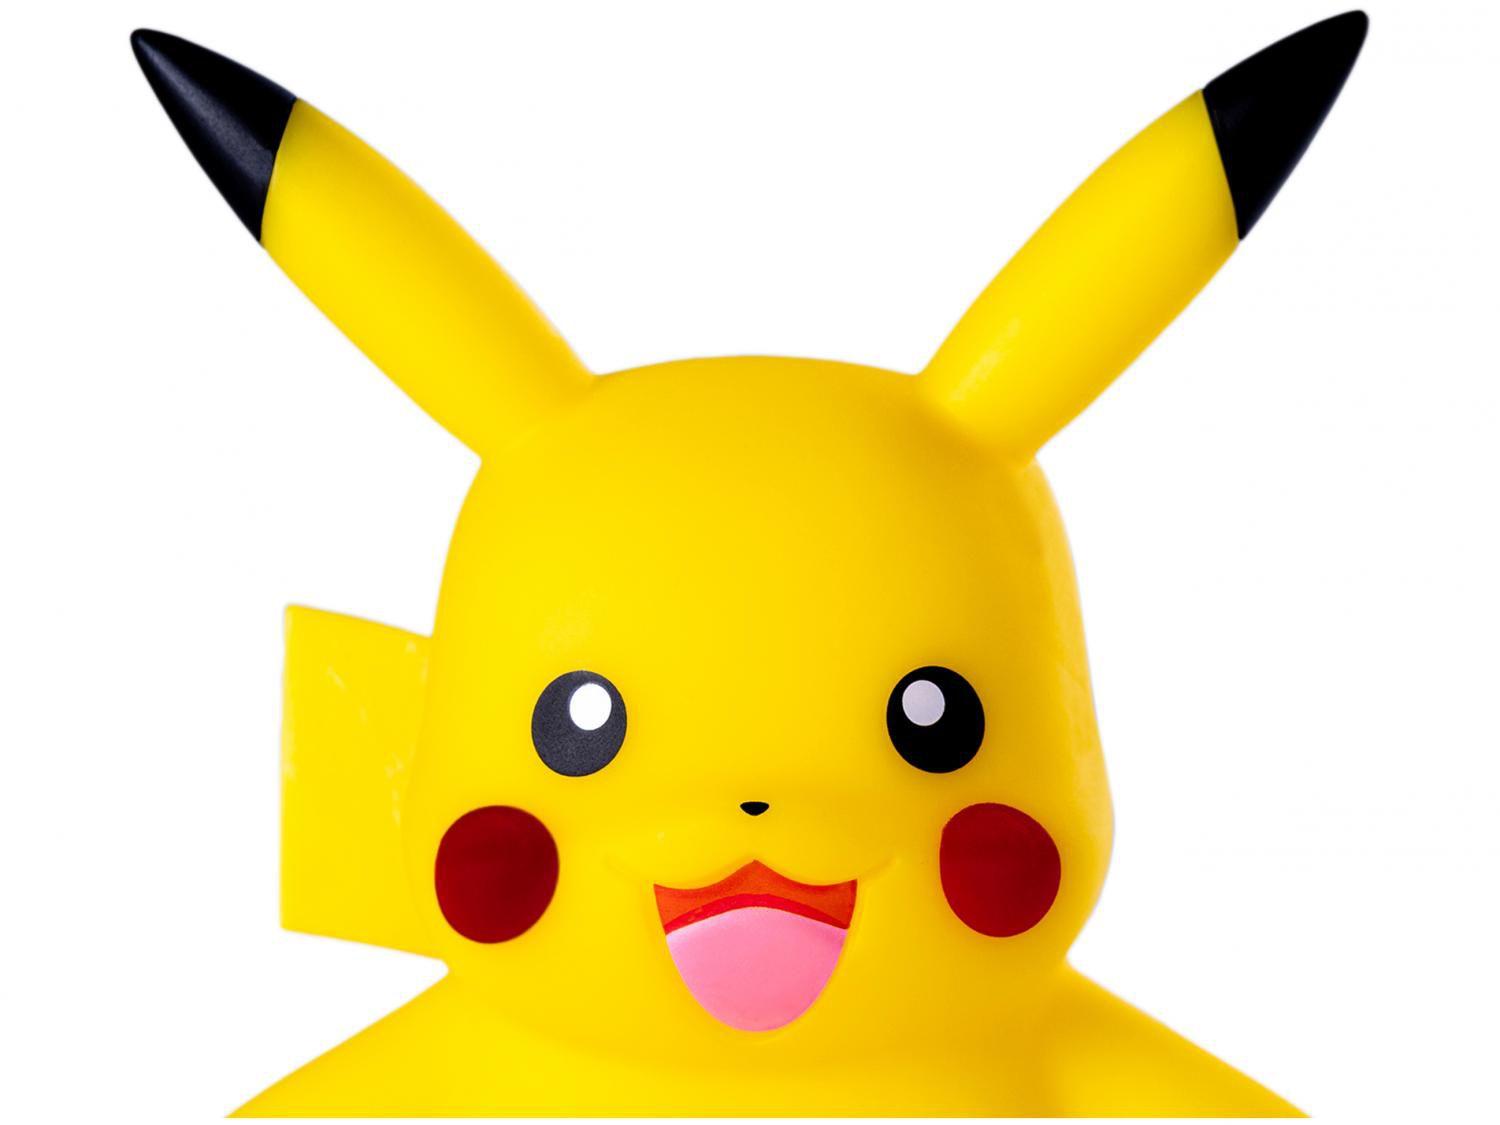 Boneco Pokémon Pikachu 10cm - Sunny Brinquedos, Shopping